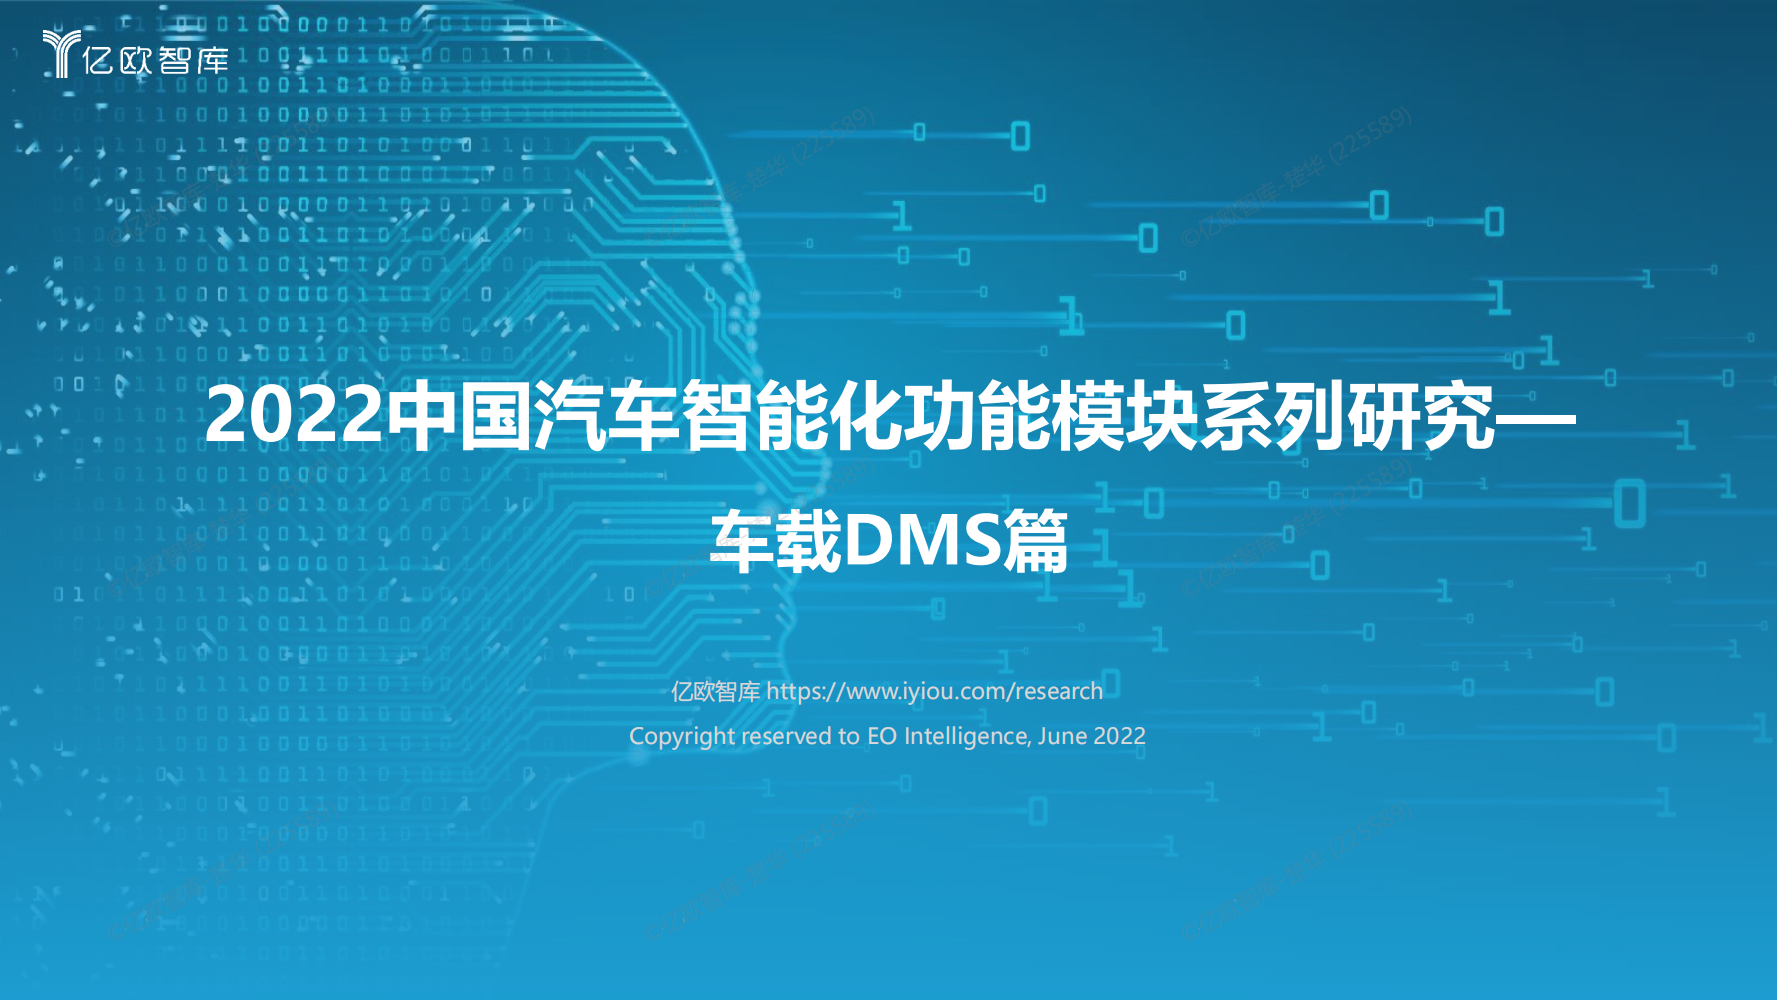 【终版V3】2022中国汽车智能化功能模块系列研究-车载DMS篇